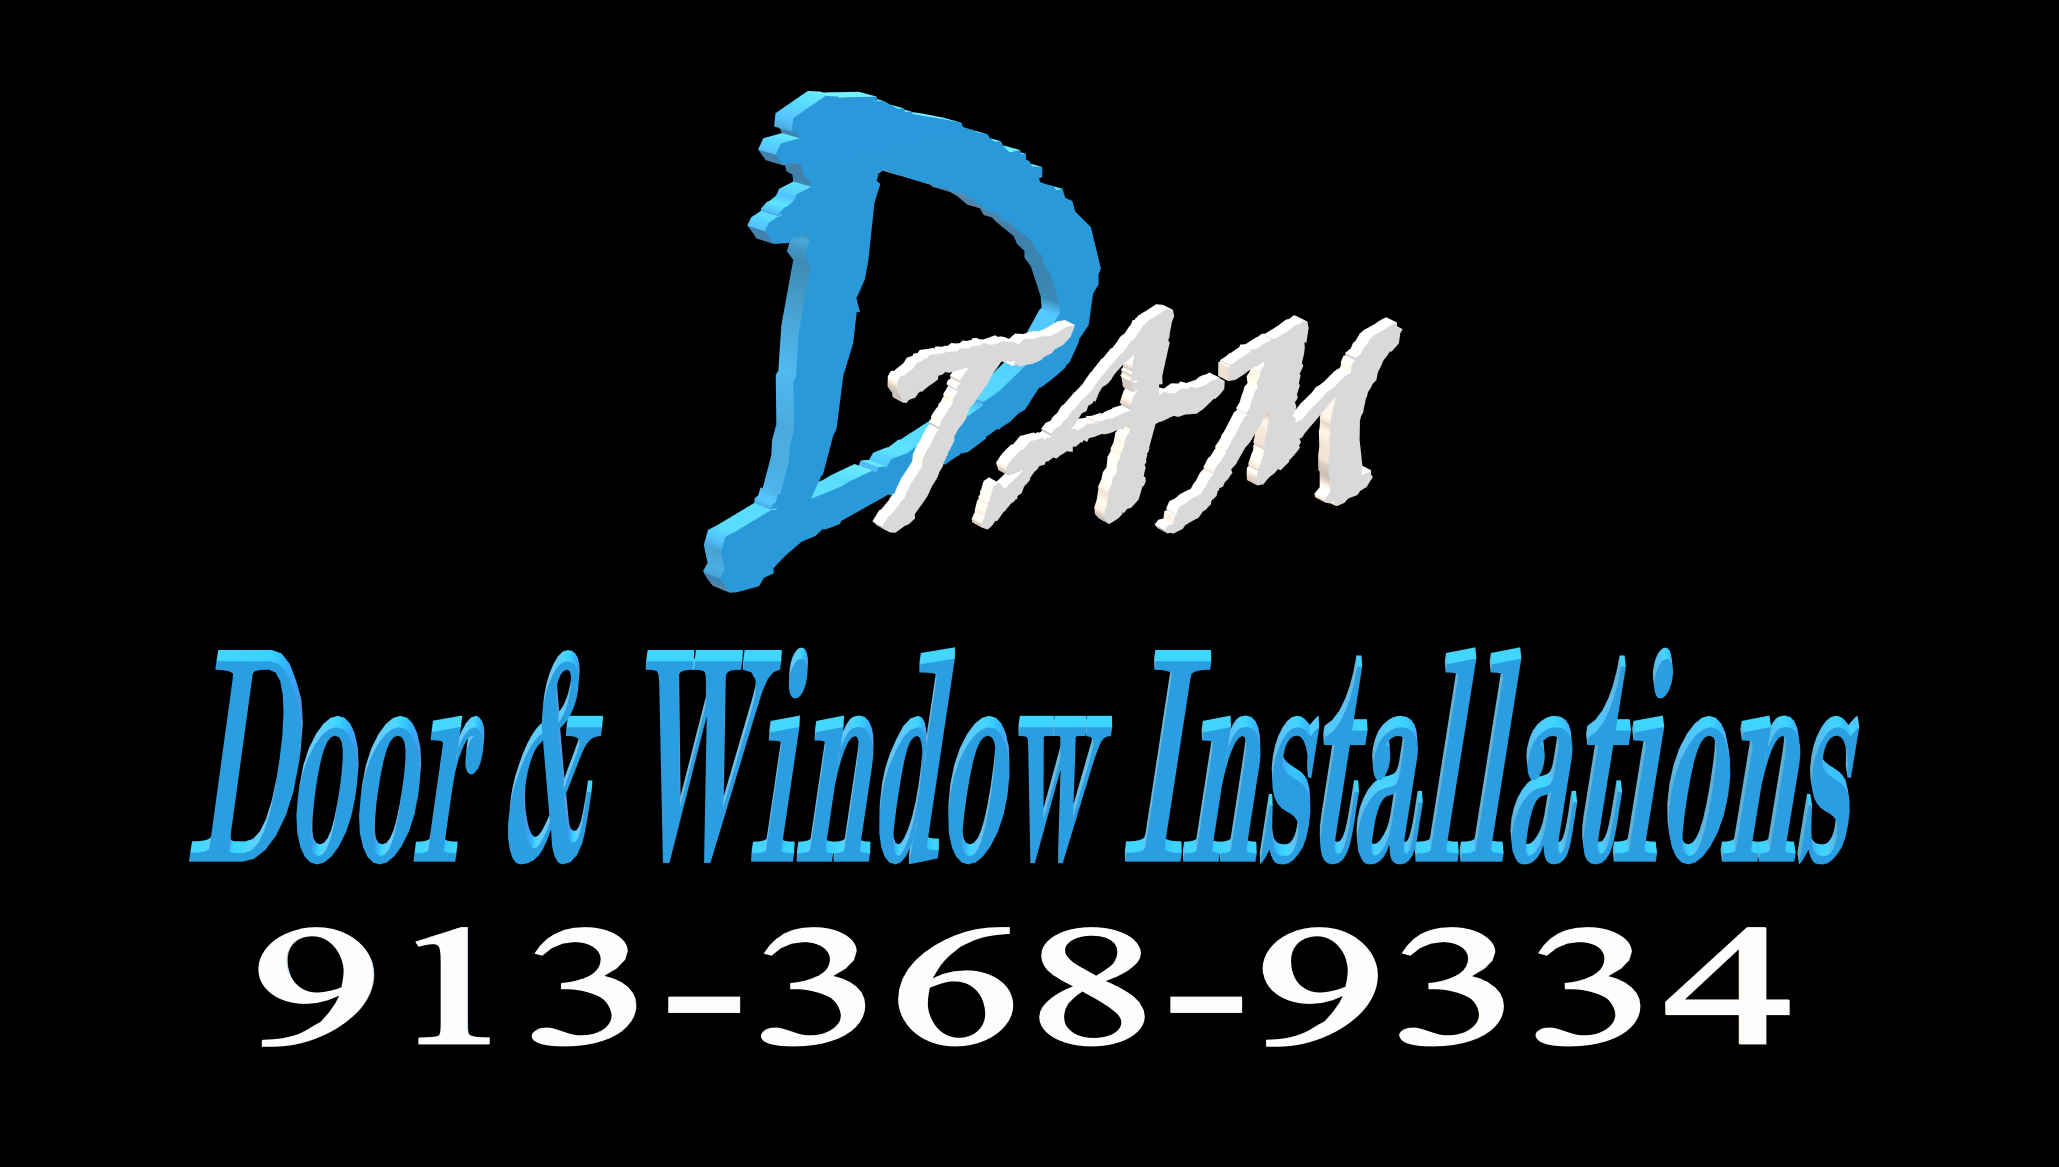 DTAM Door & Window Installations logo